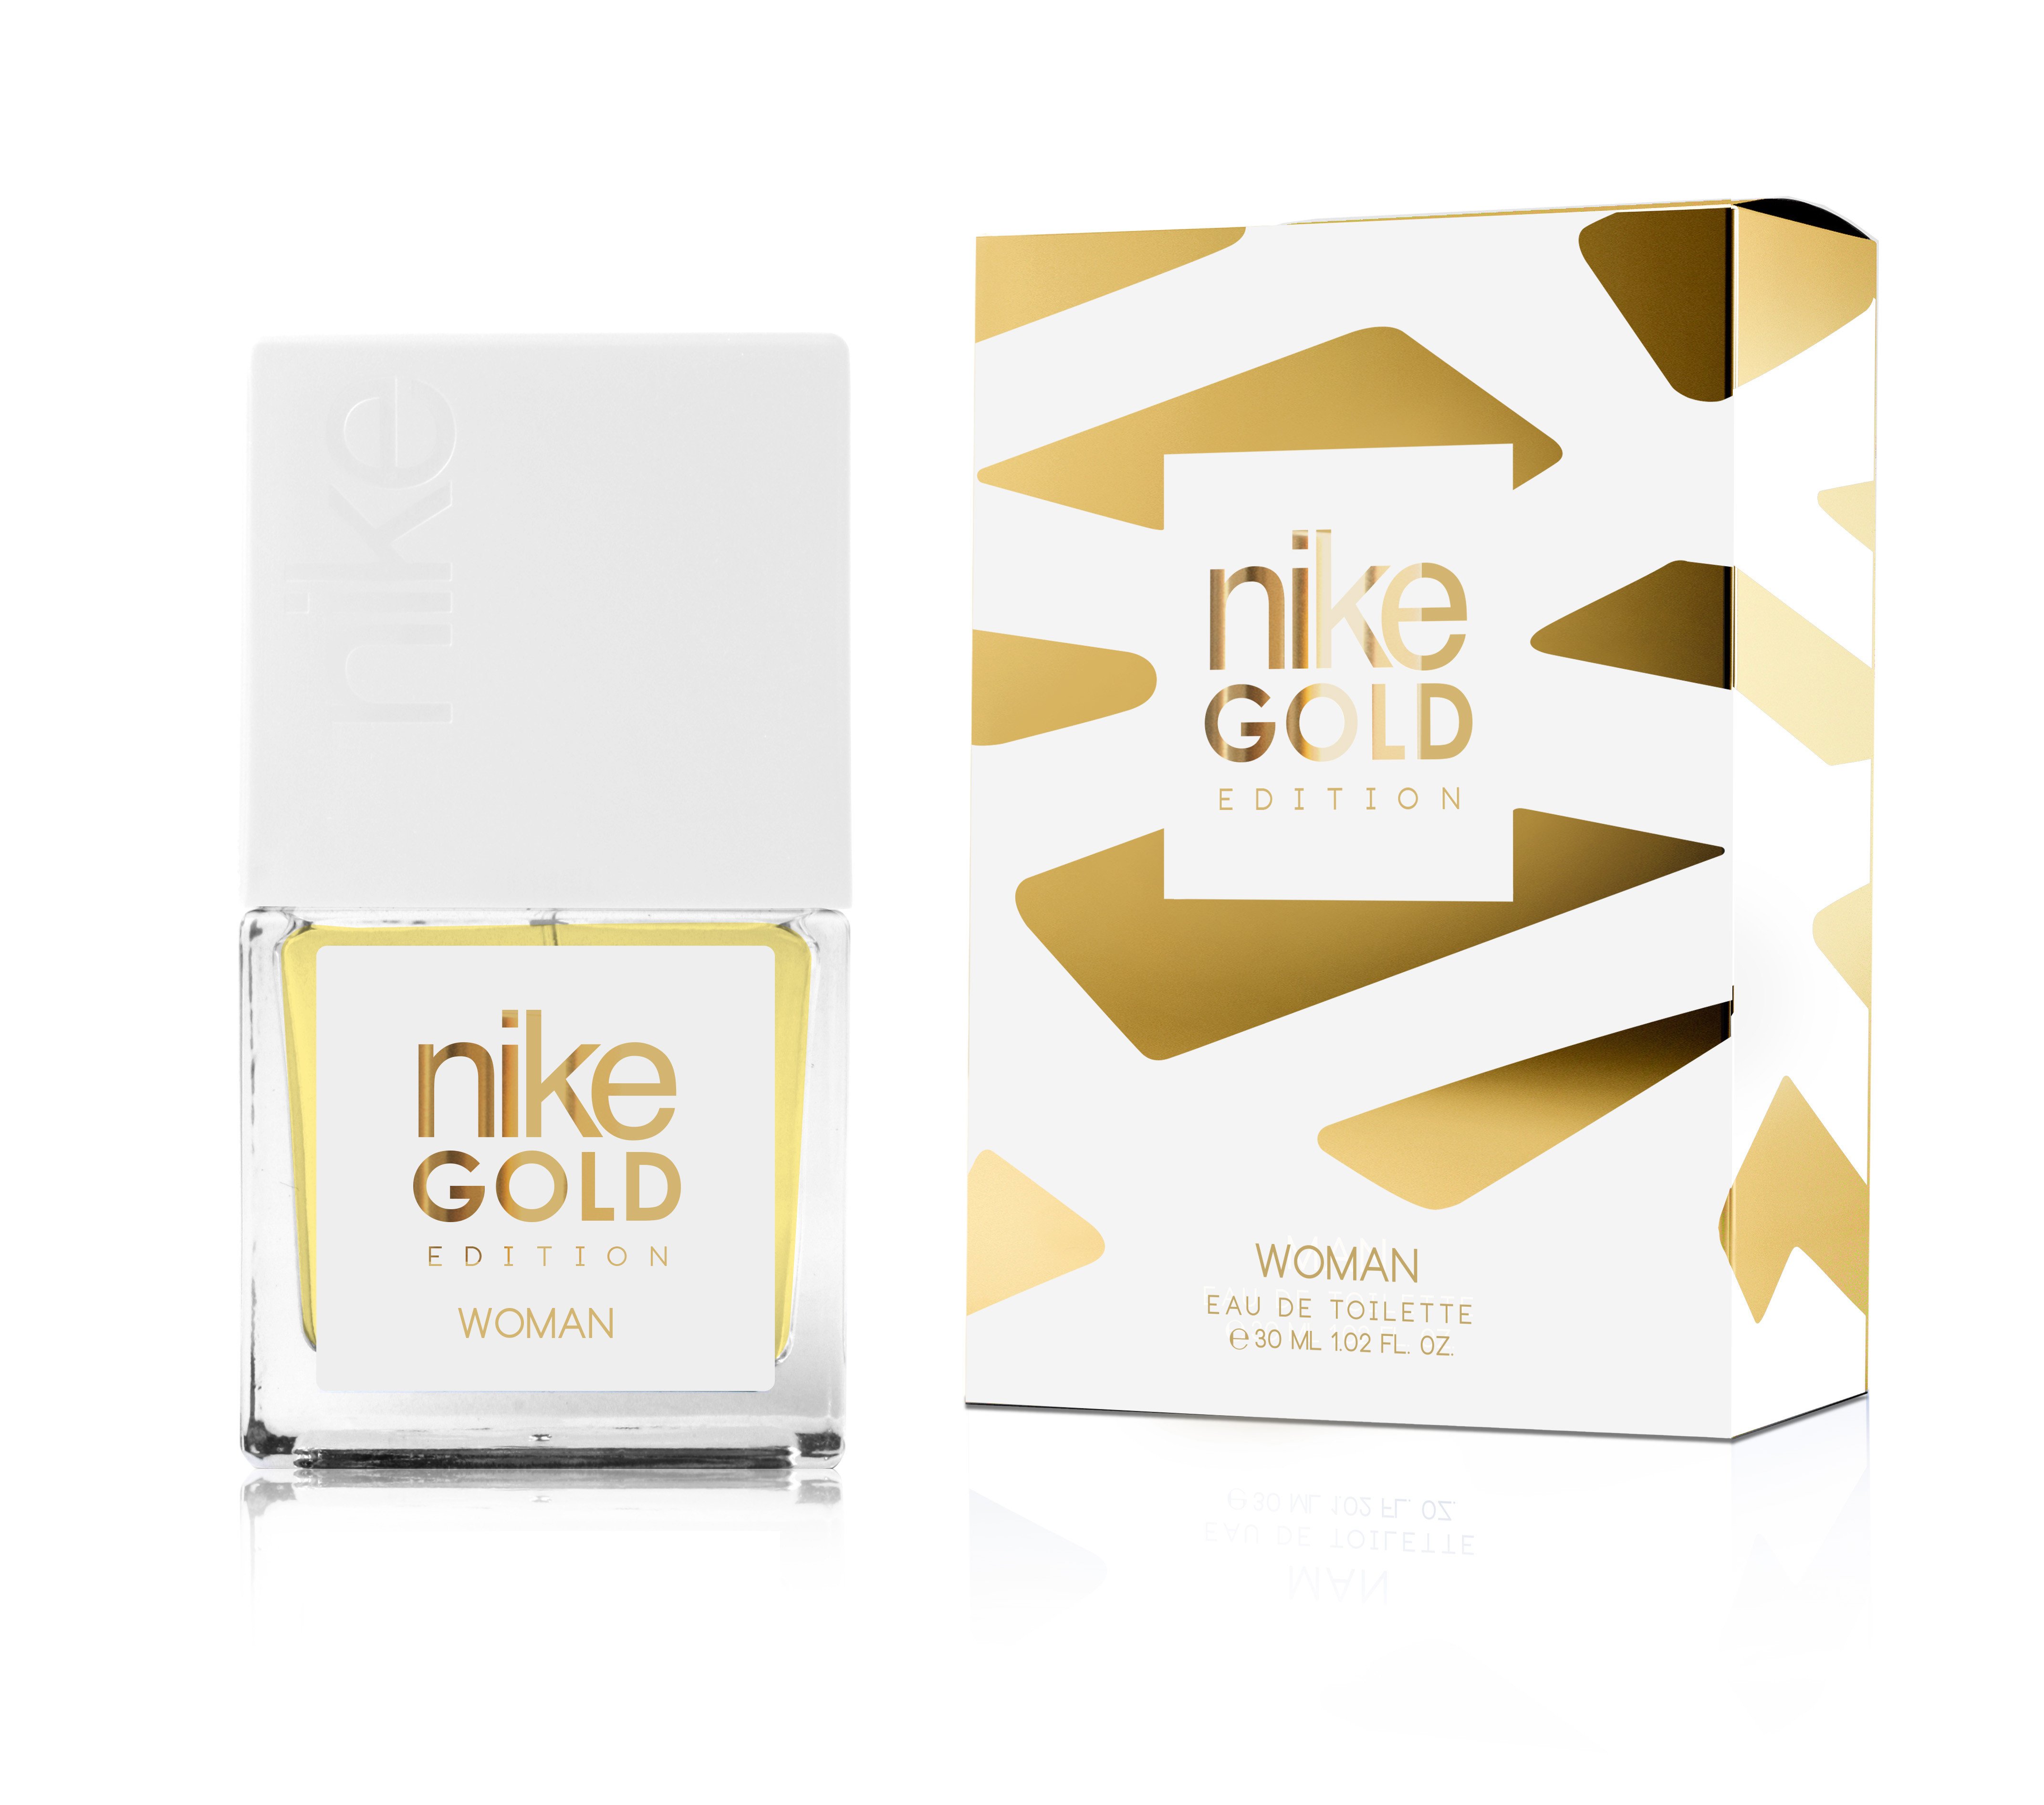 Gold New Brand Parfums Colônia - a fragrância Masculino 2016